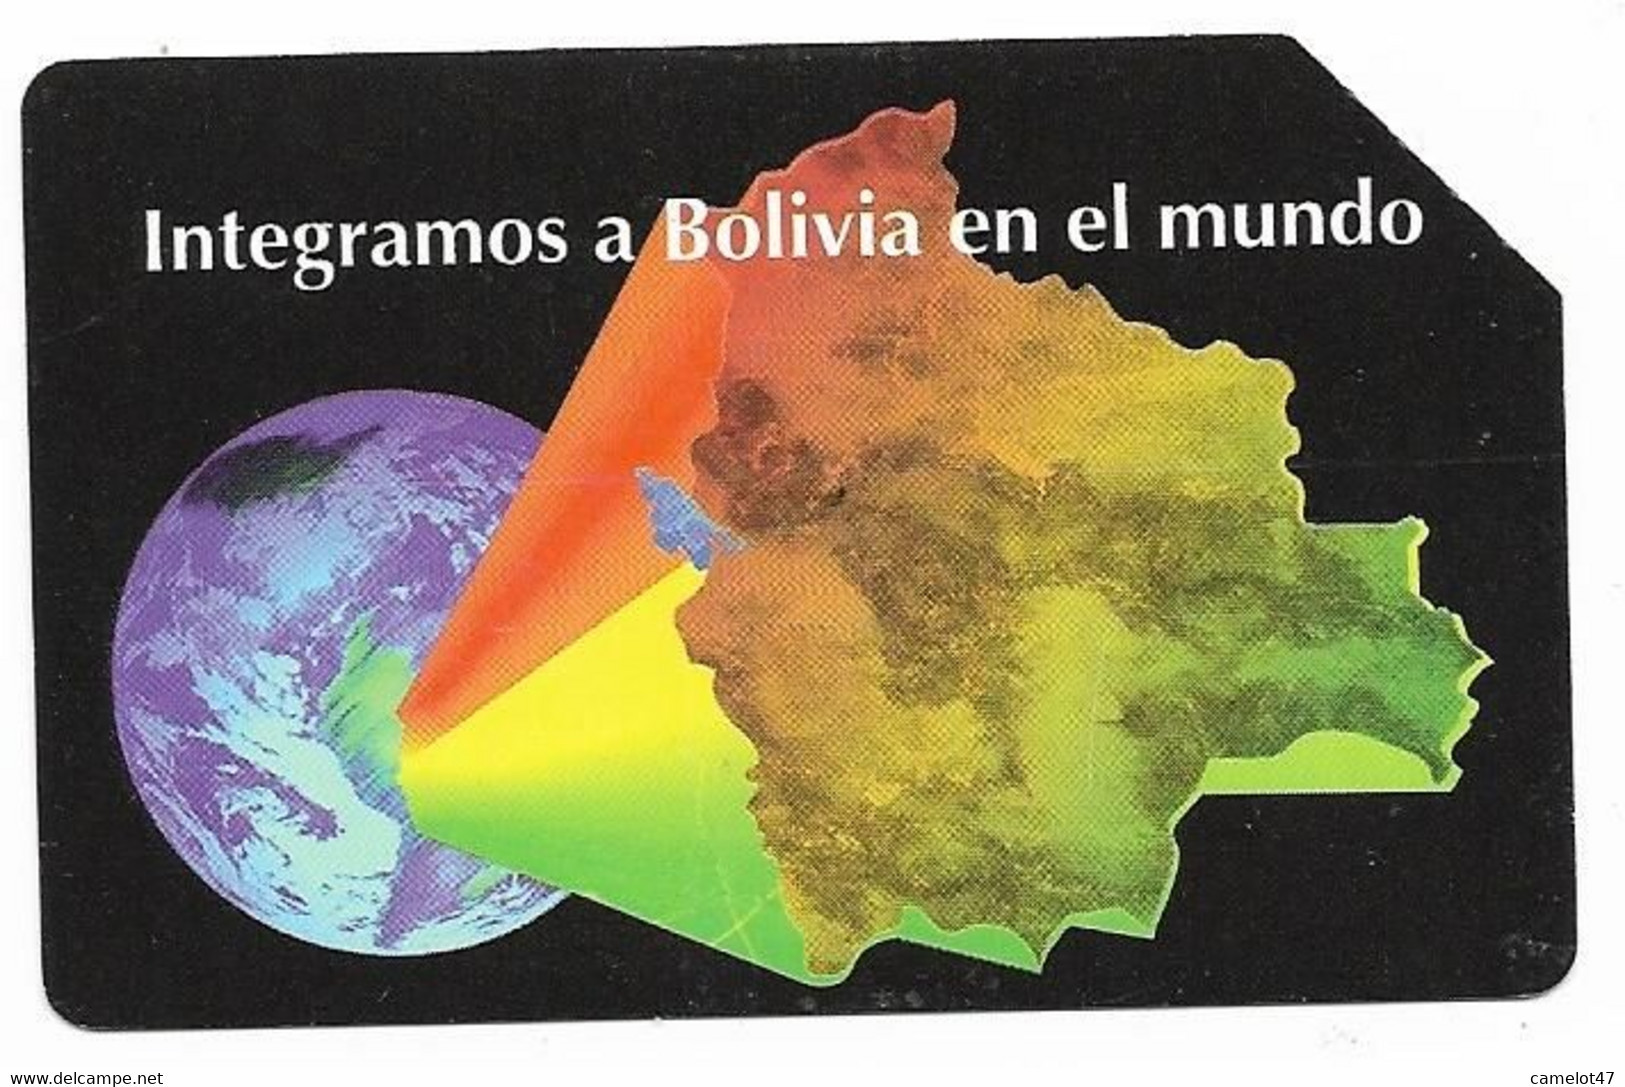 Bolivia, Entel, Urmet Used Phone Card, No Value, Collectors Item, # Bolivia-34 - Bolivien